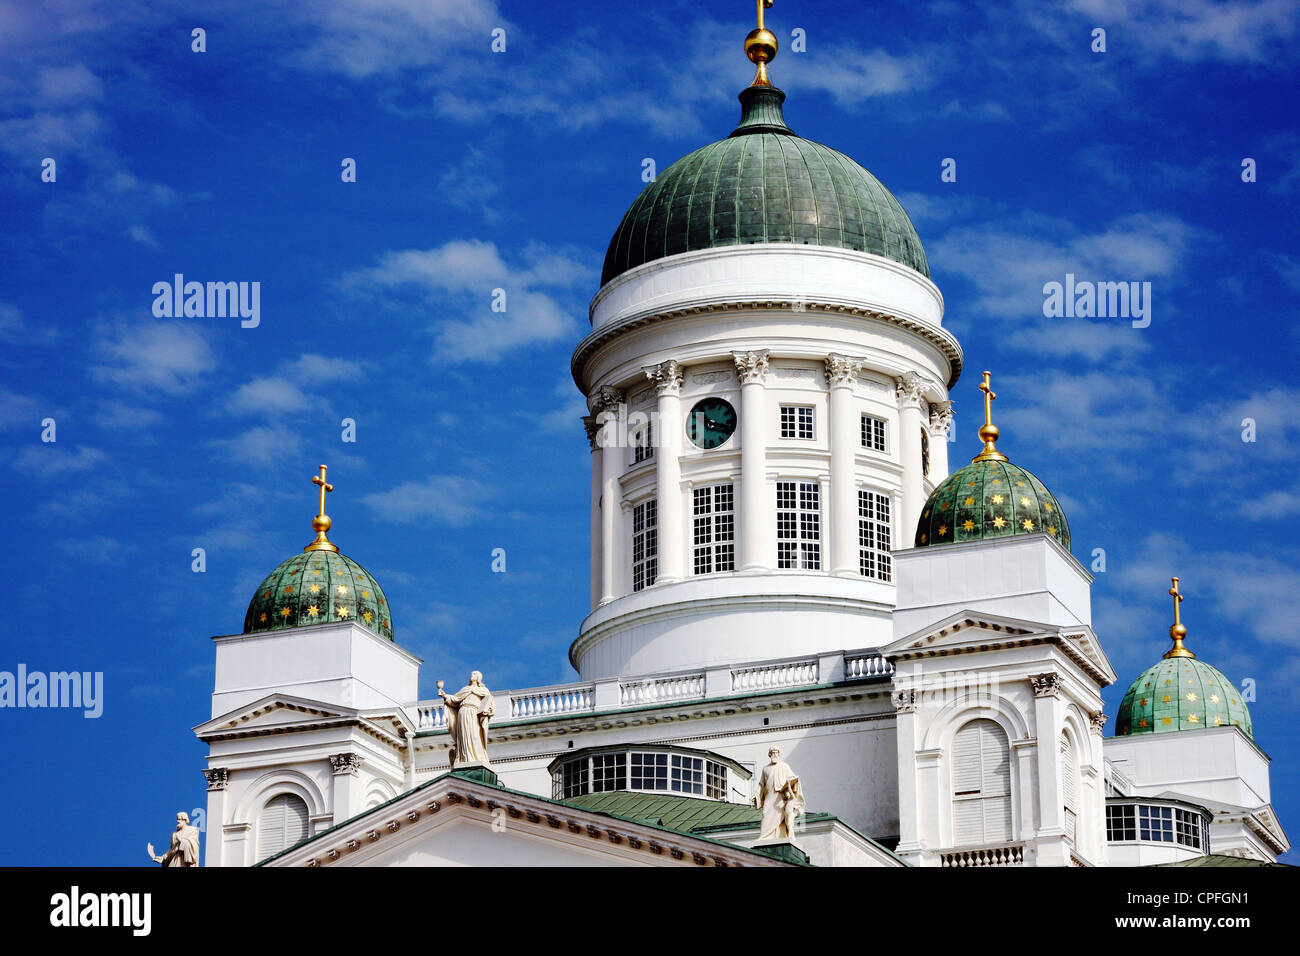 Die prächtige Kathedrale in Helsinki Finnland gegen einen feinen Sommerhimmel Stockfoto